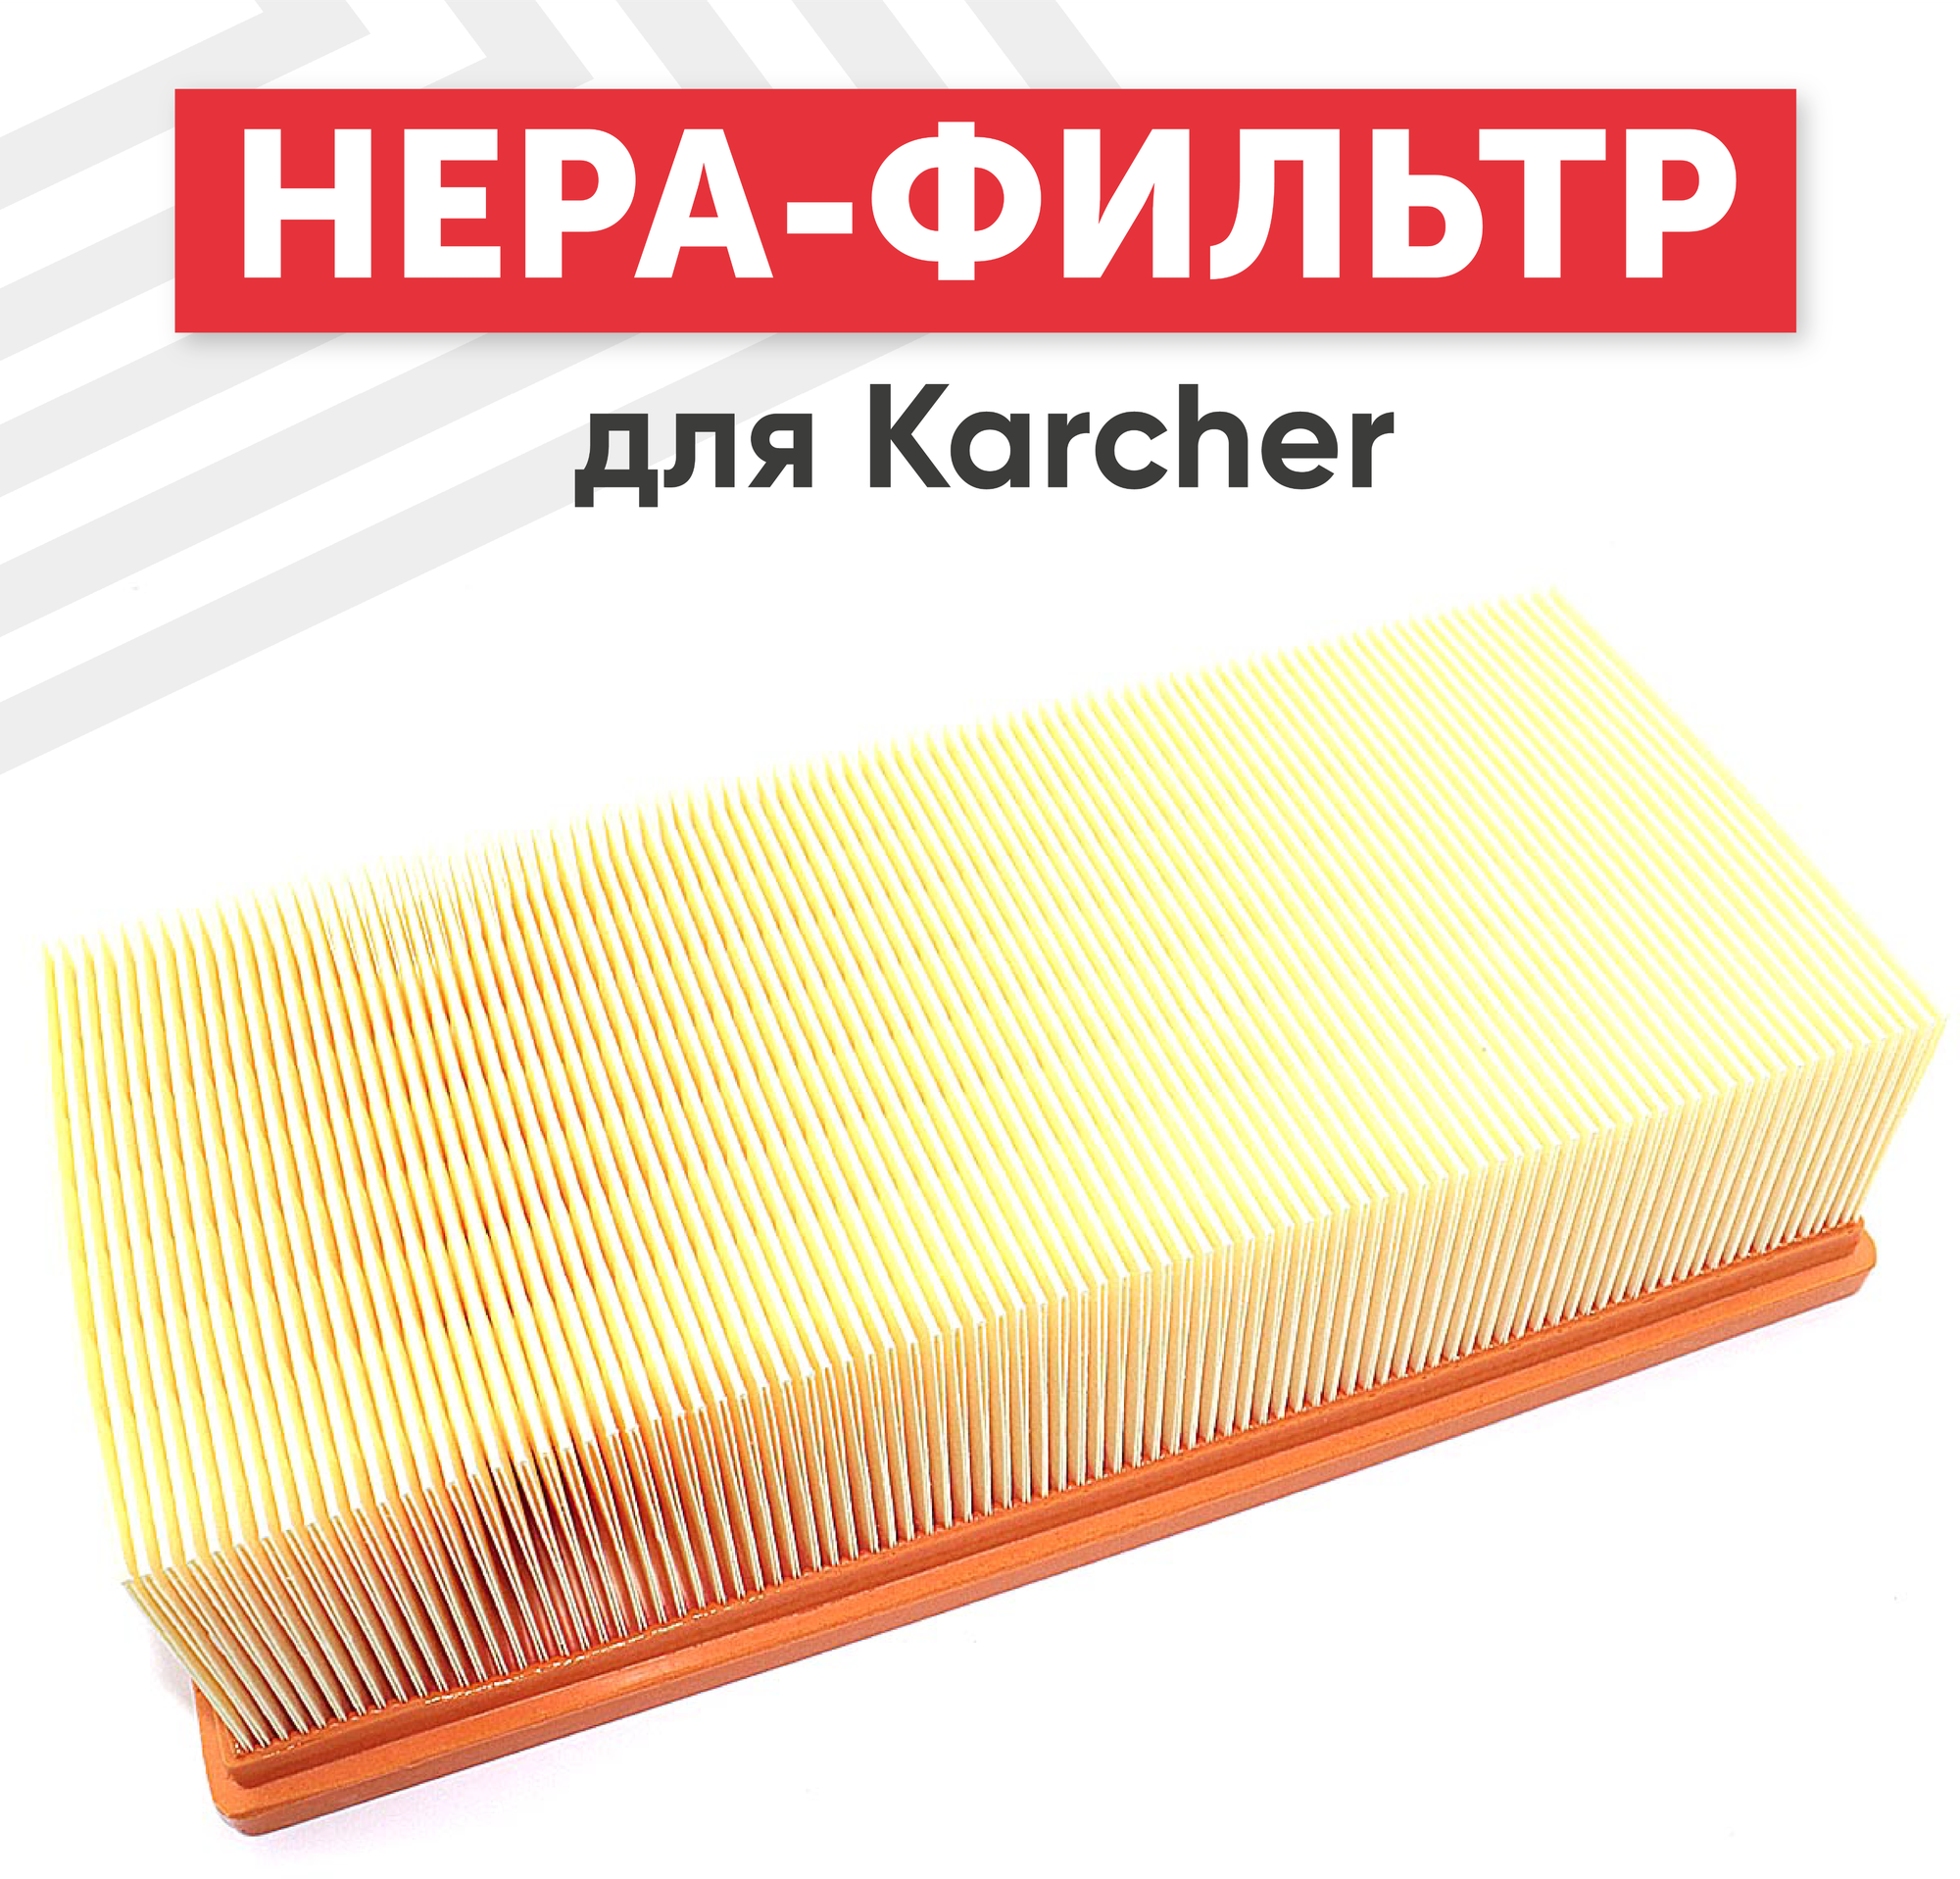 Плоский HEPA фильтр (синтетический/складчатый) 69042830 для пылесоса Karcher NT 65/2 Ap NT 72/2 Tc NT 75/2